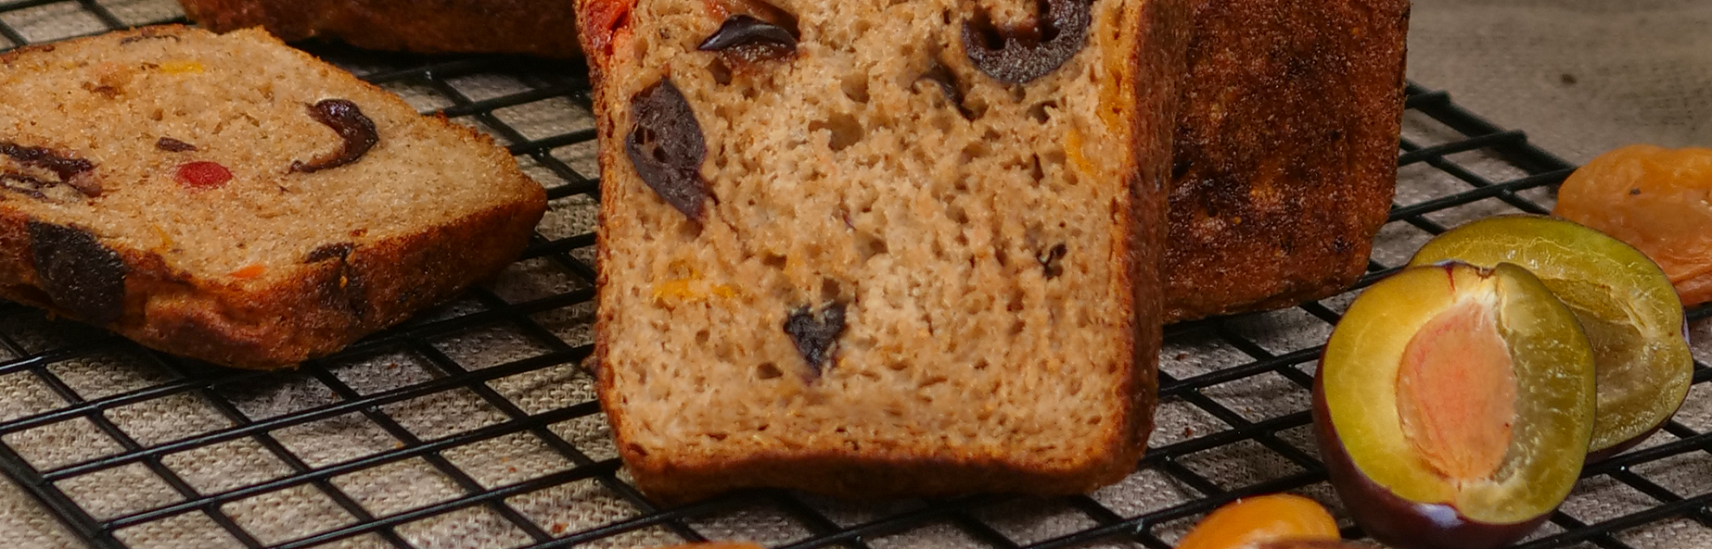 Ржано-пшеничный хлеб с сухофруктами